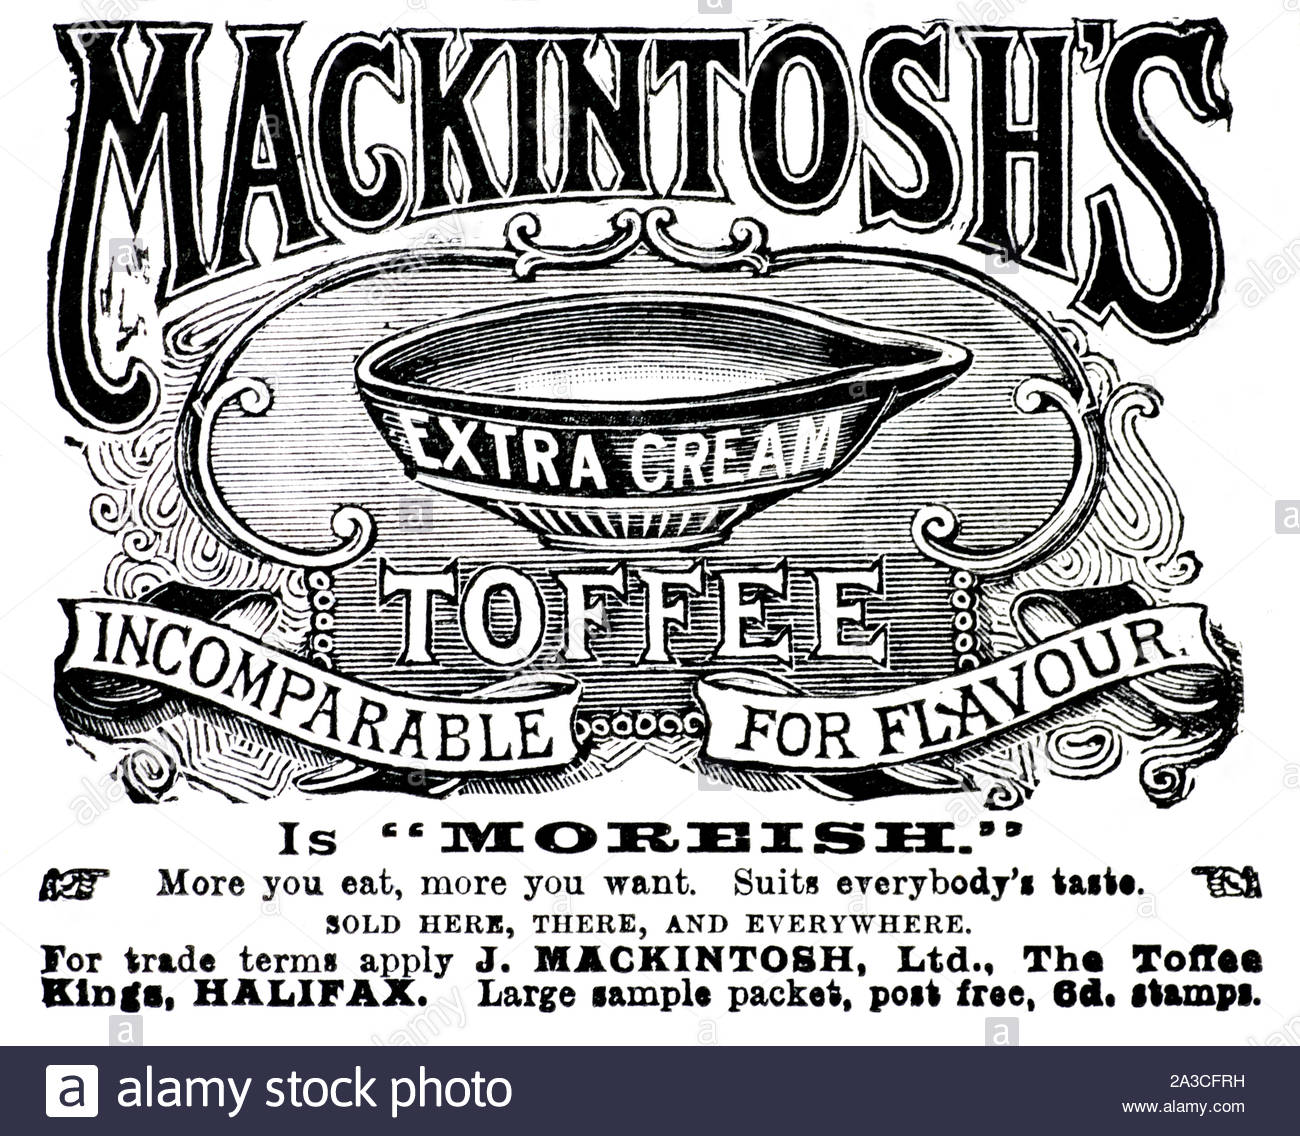 L'ère victorienne, Mackintosh's Extra Crème caramel, vintage advertising à partir de 1899 Banque D'Images